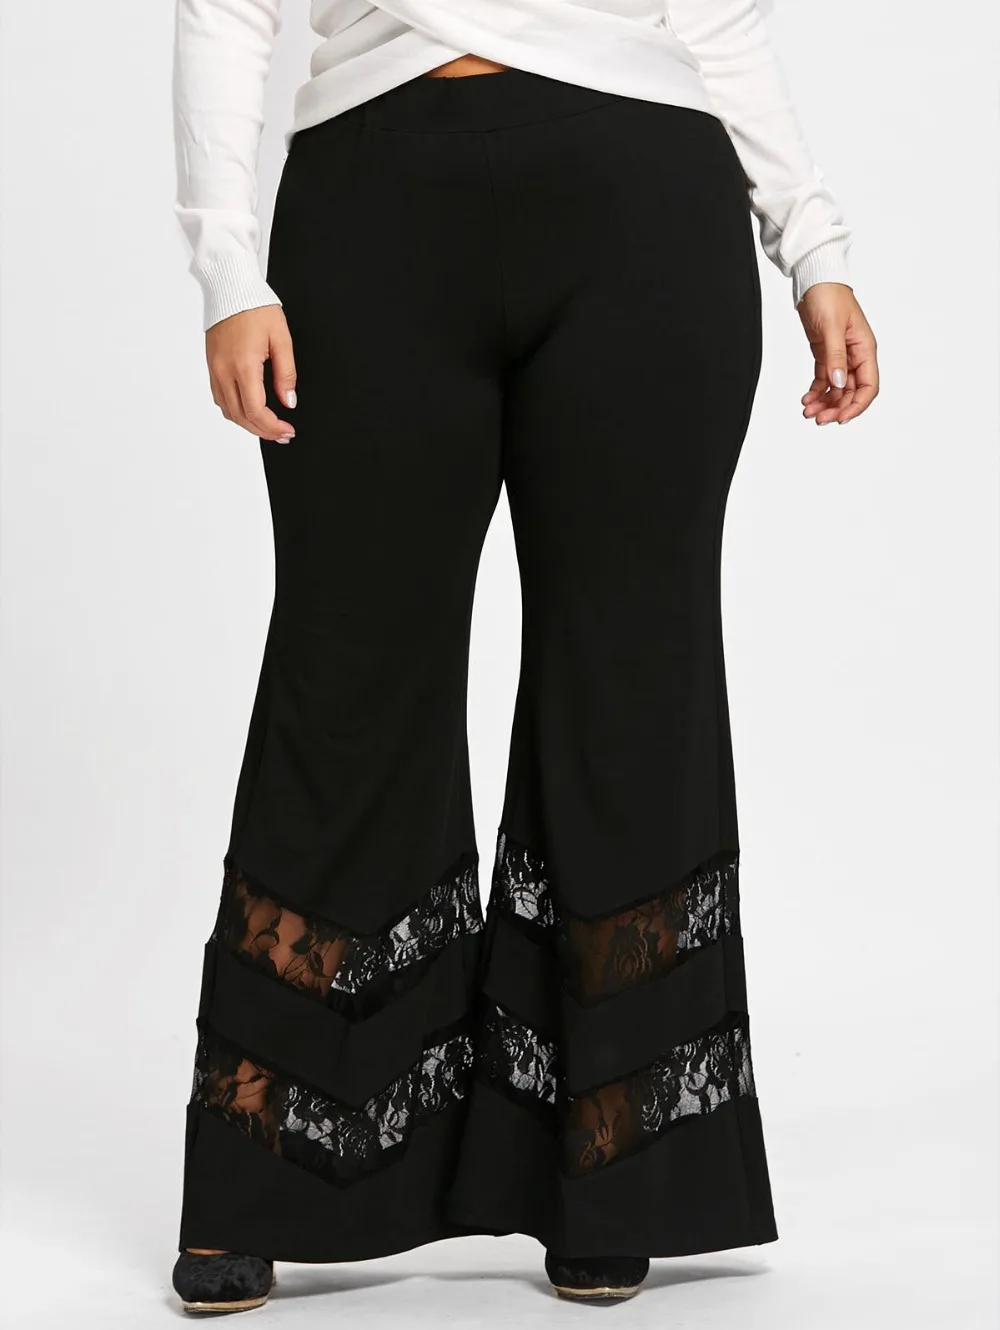 Plus Size New Fashion Style High Waist Lace Pants Woman Ultra Wide Leg ...